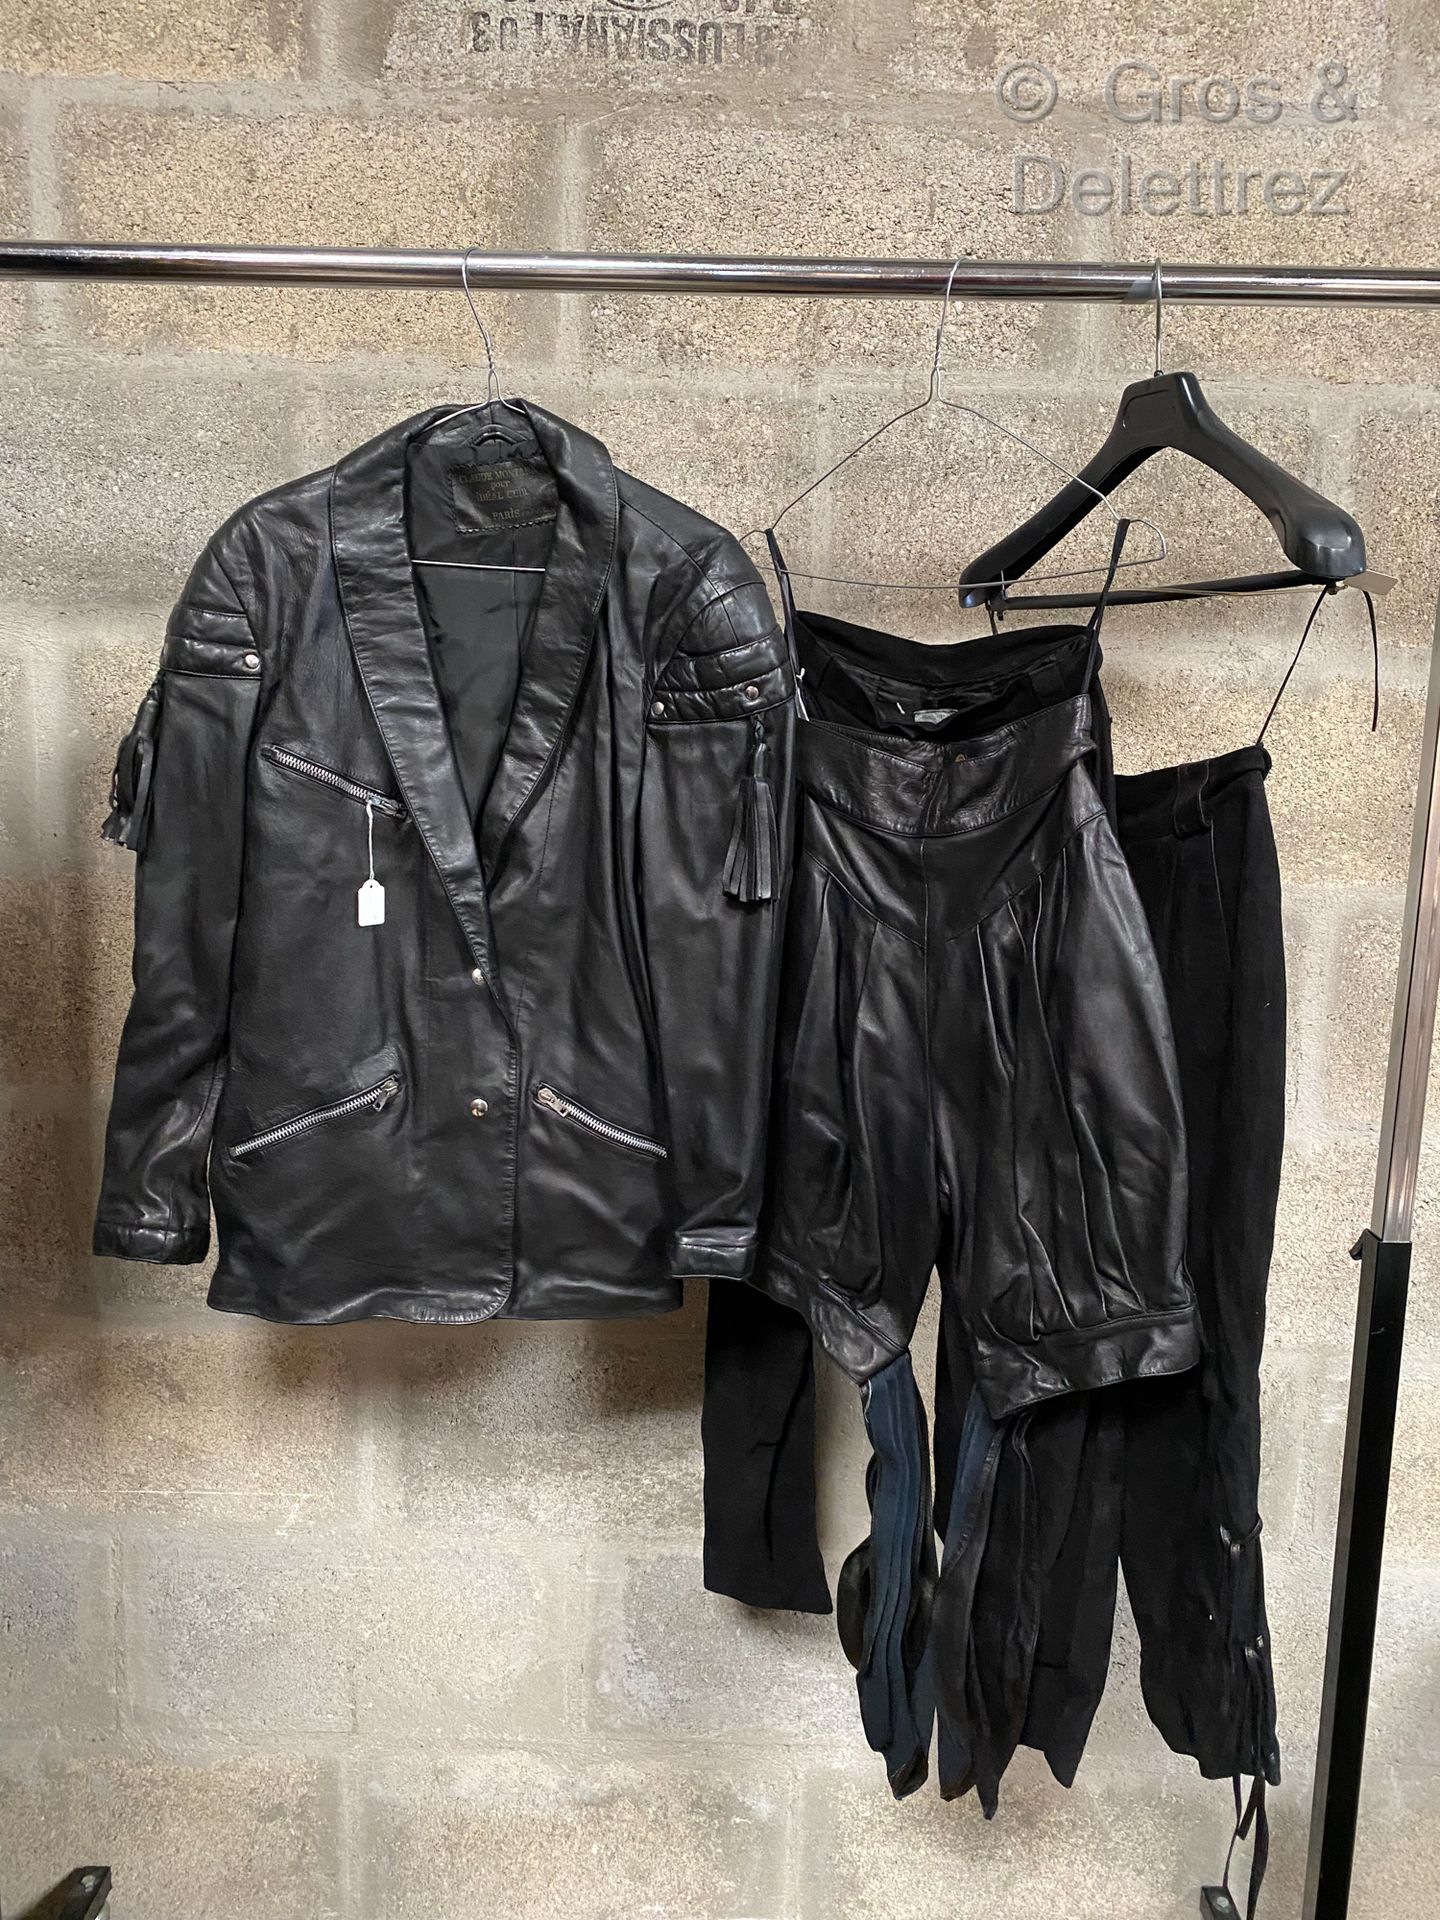 Null CLAUDE MONTANA FOR IDEAL CUIR，套装包括一件黑色带流苏的皮夹克，两条黑色麂皮长裤和黑色皮短裤